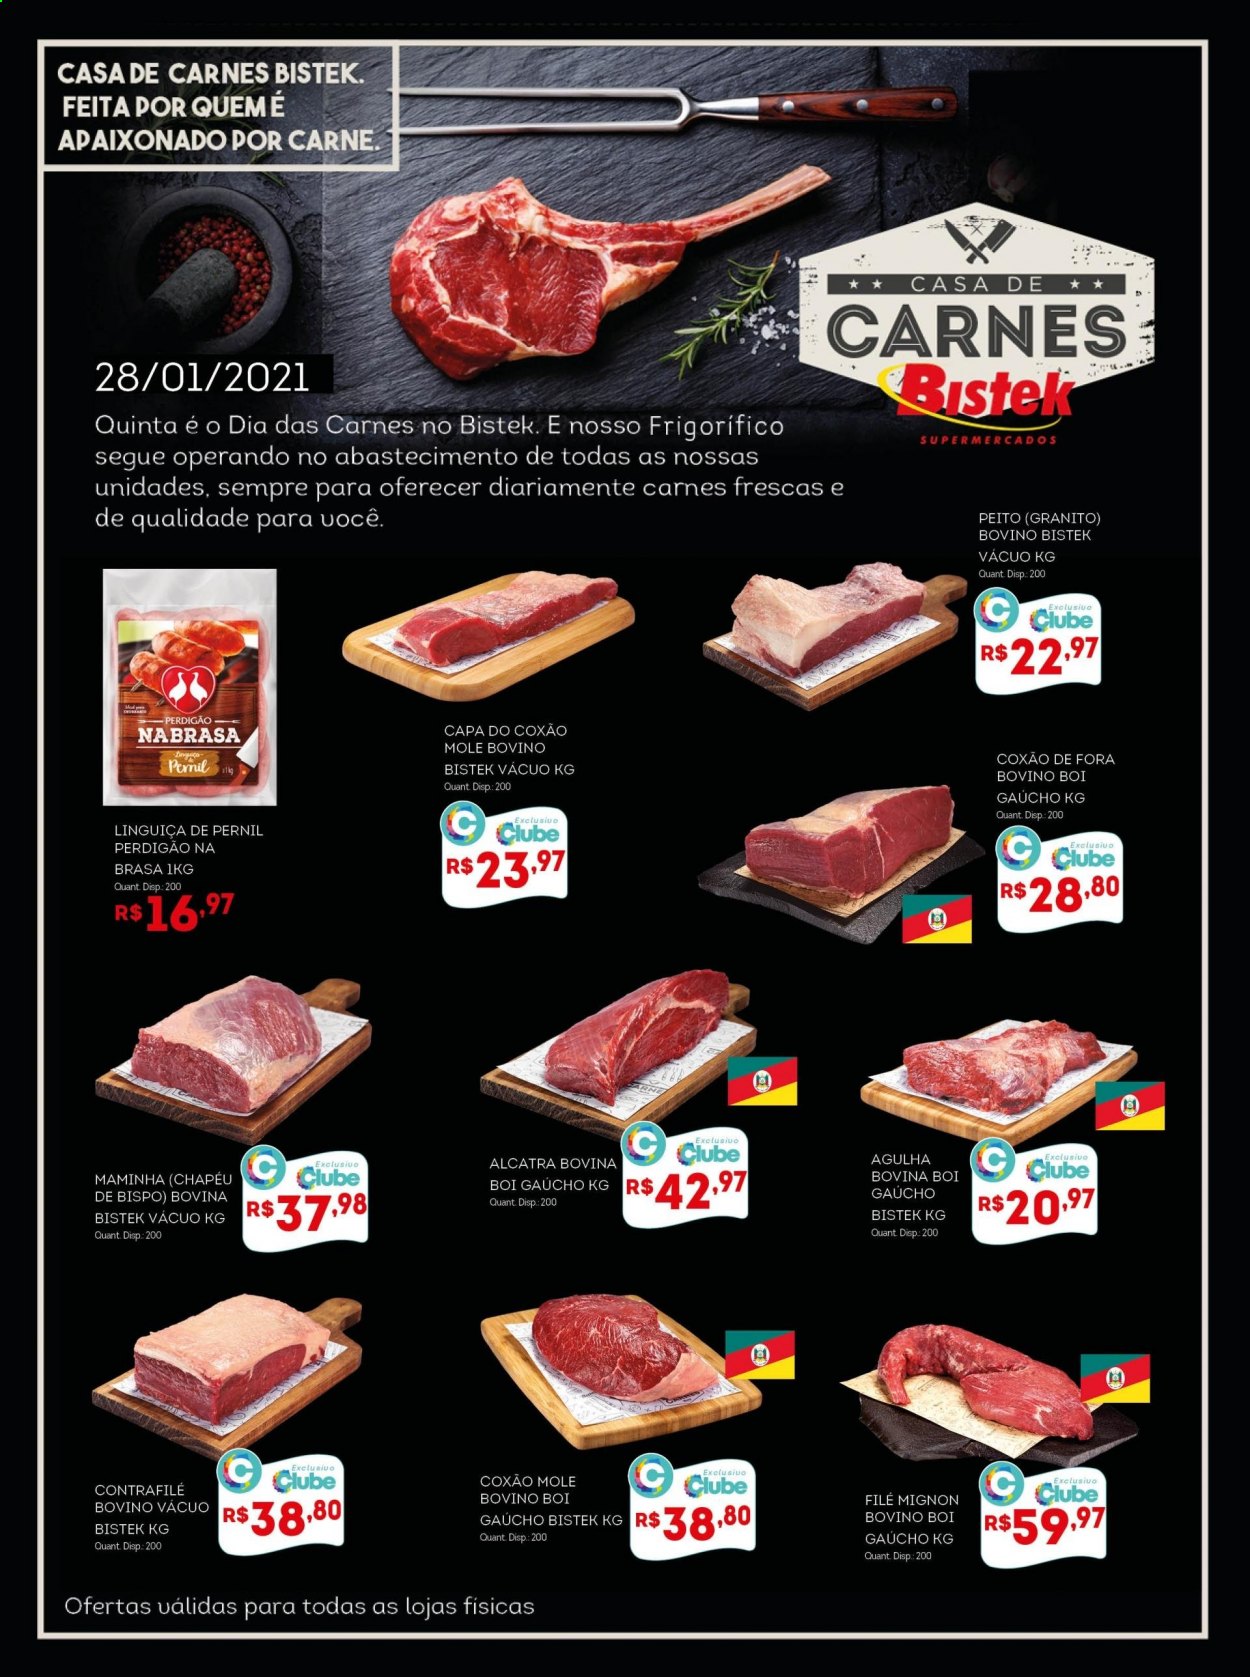 thumbnail - Folheto Bistek Supermercados - 28/01/2021 - 28/01/2021 - Produtos em promoção - carne, pernil, Perdigão, file-mignon, alcatra, coxão mole, linguiça, linguiça de pernil. Página 1.